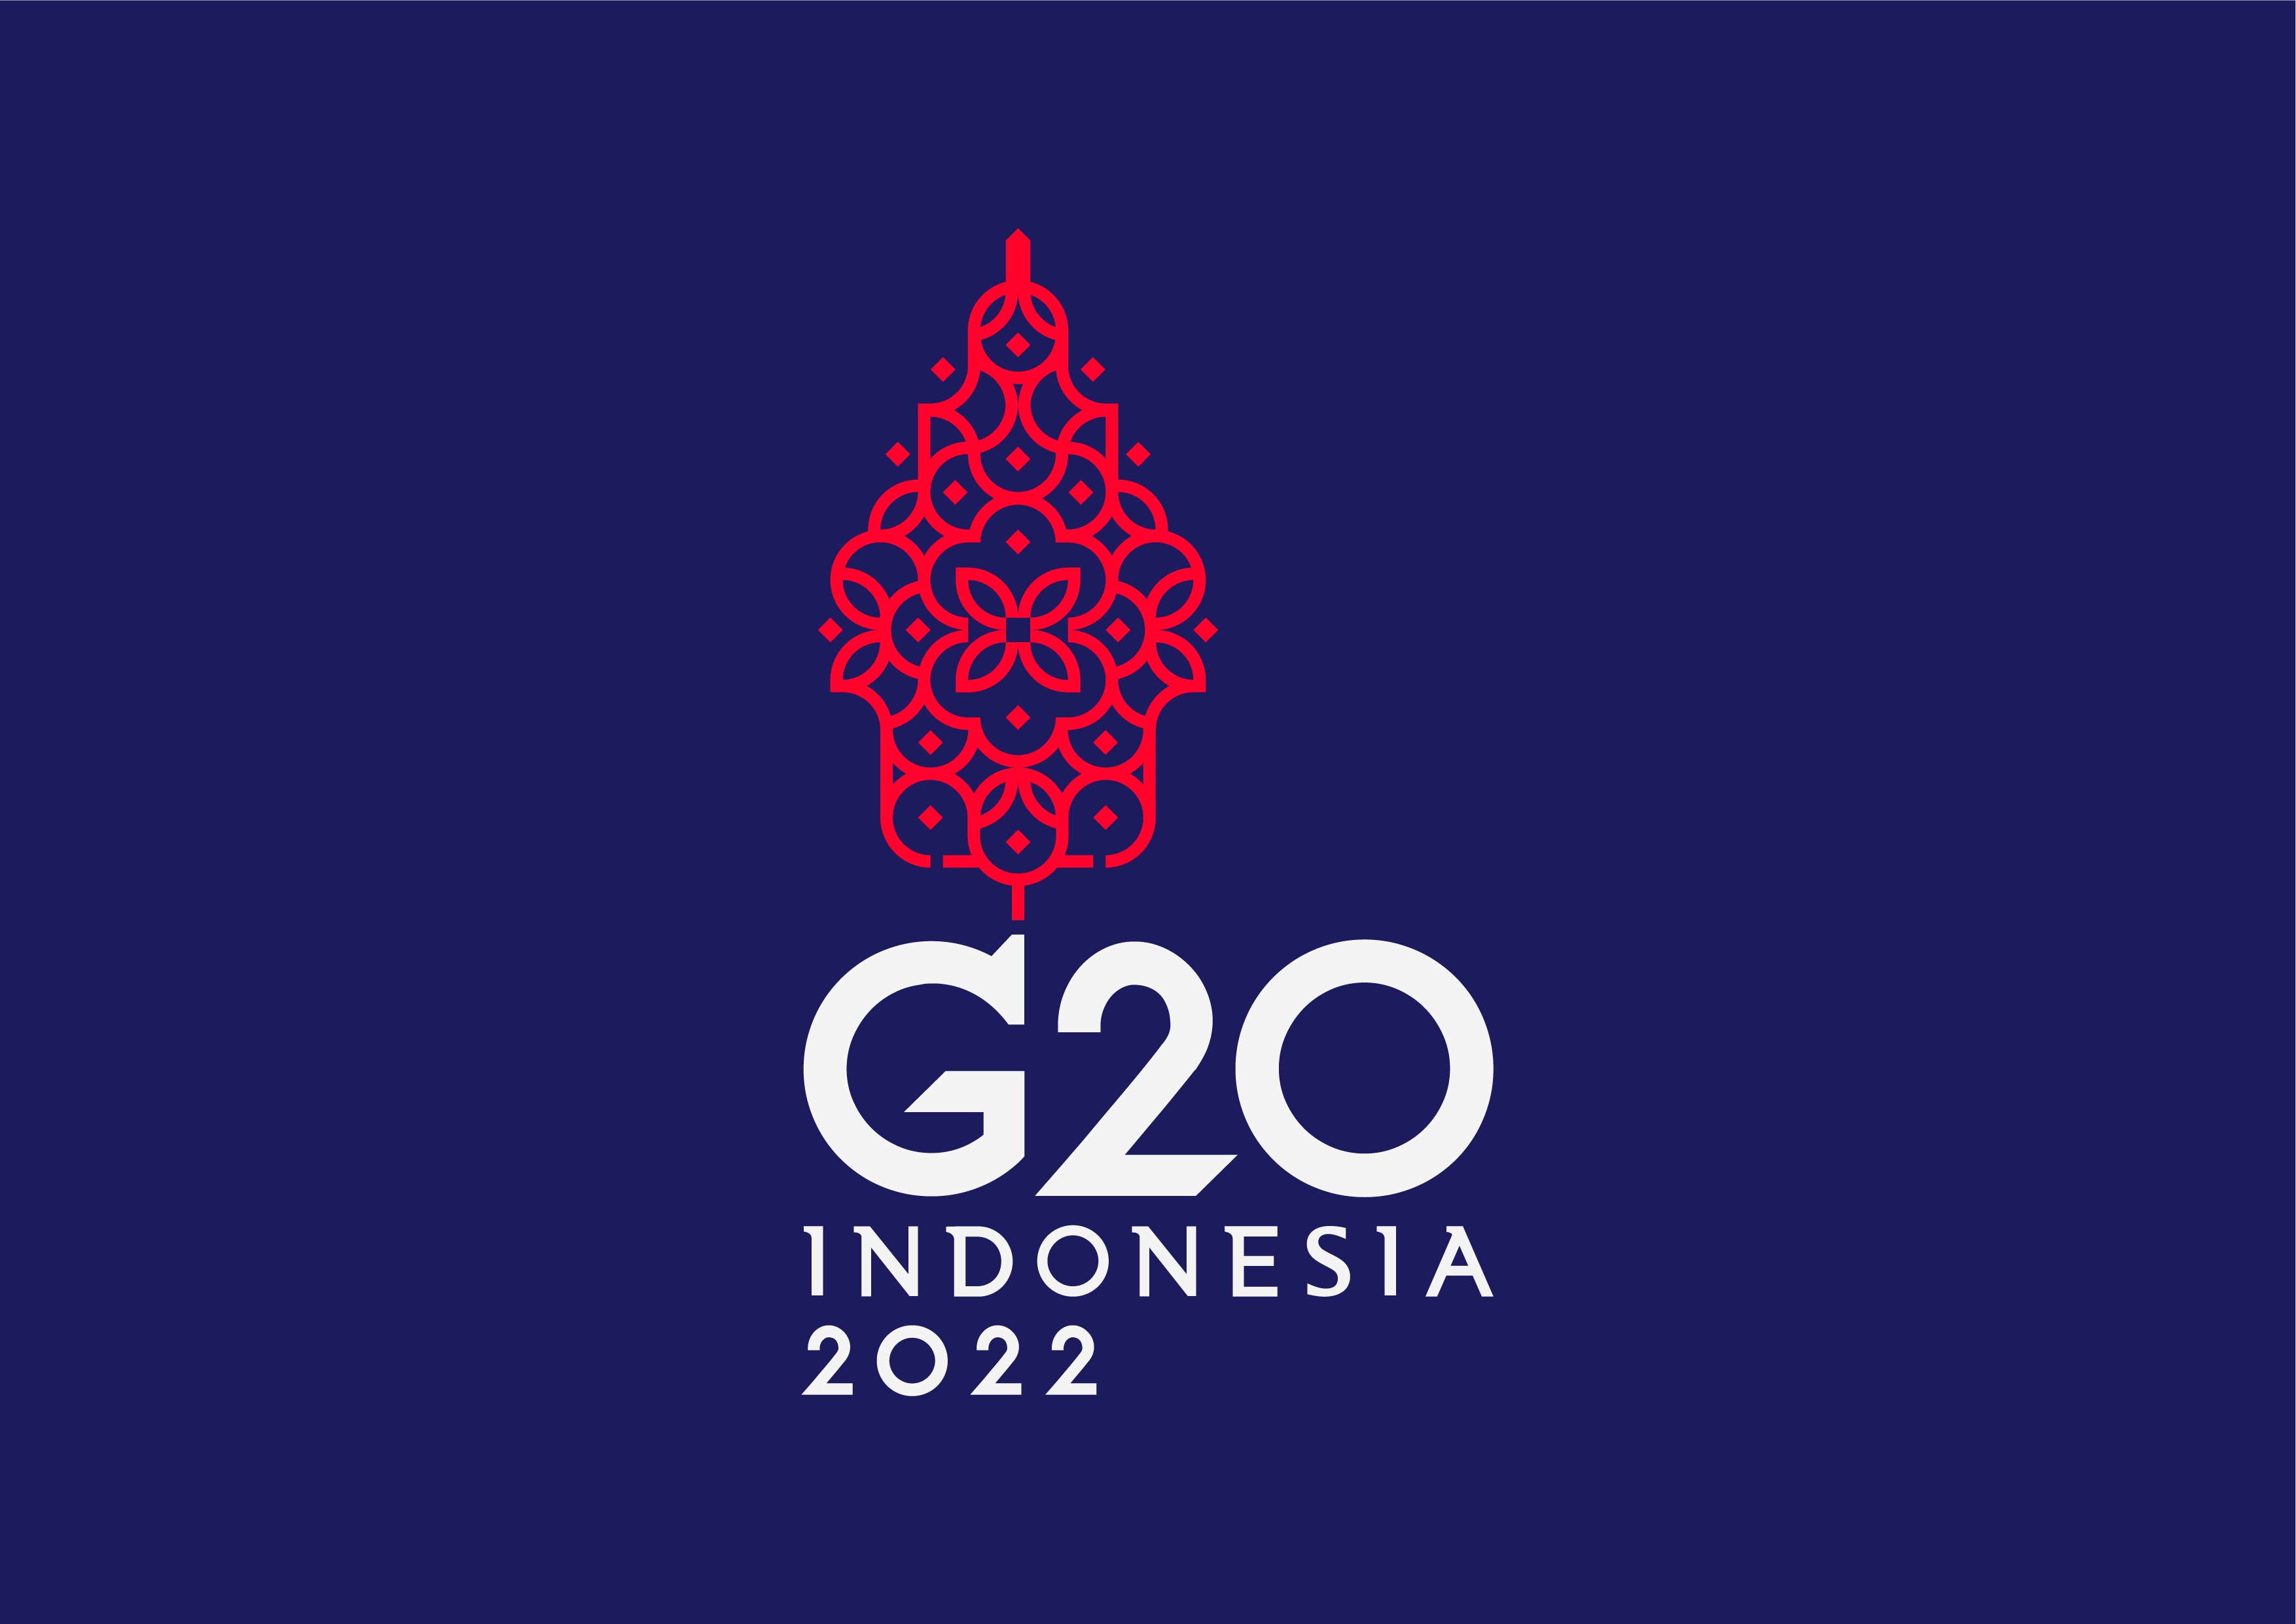 Inilah Makna Dan Filosofi Logo Presidensi G20 Indonesia 2022 Times Jatim Porn Sex Picture